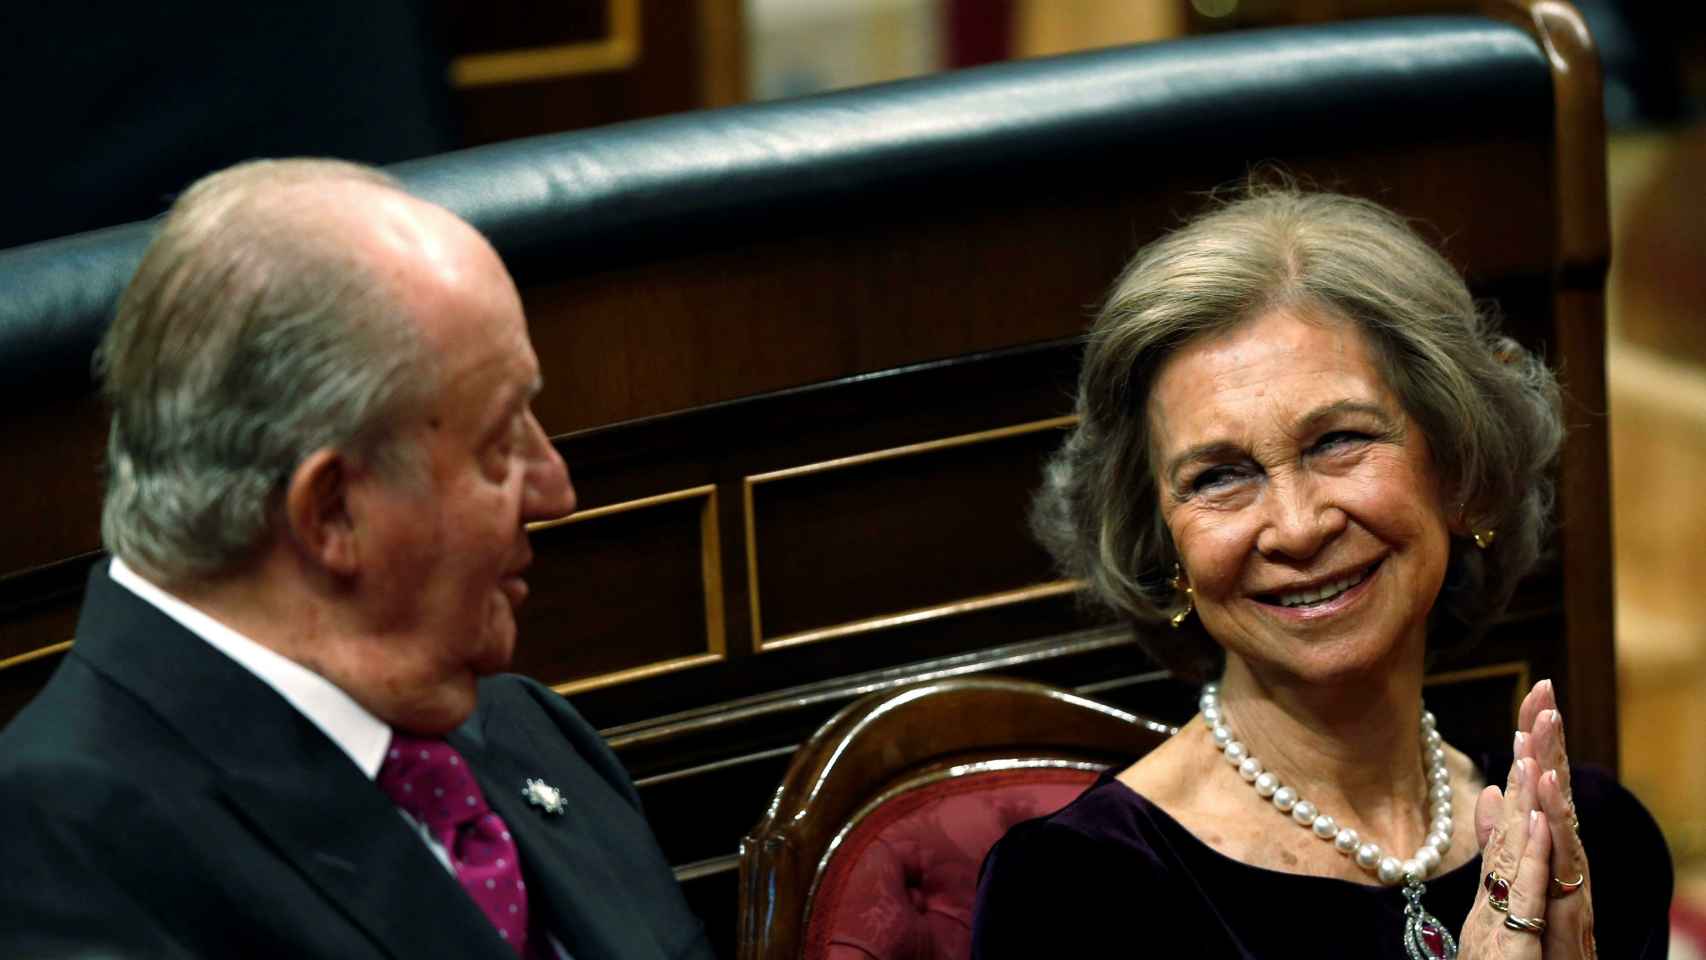 Don Juan Carlos sonríe a Doña Sofía durante los actos del 6-D en el Congreso de los Diputados.